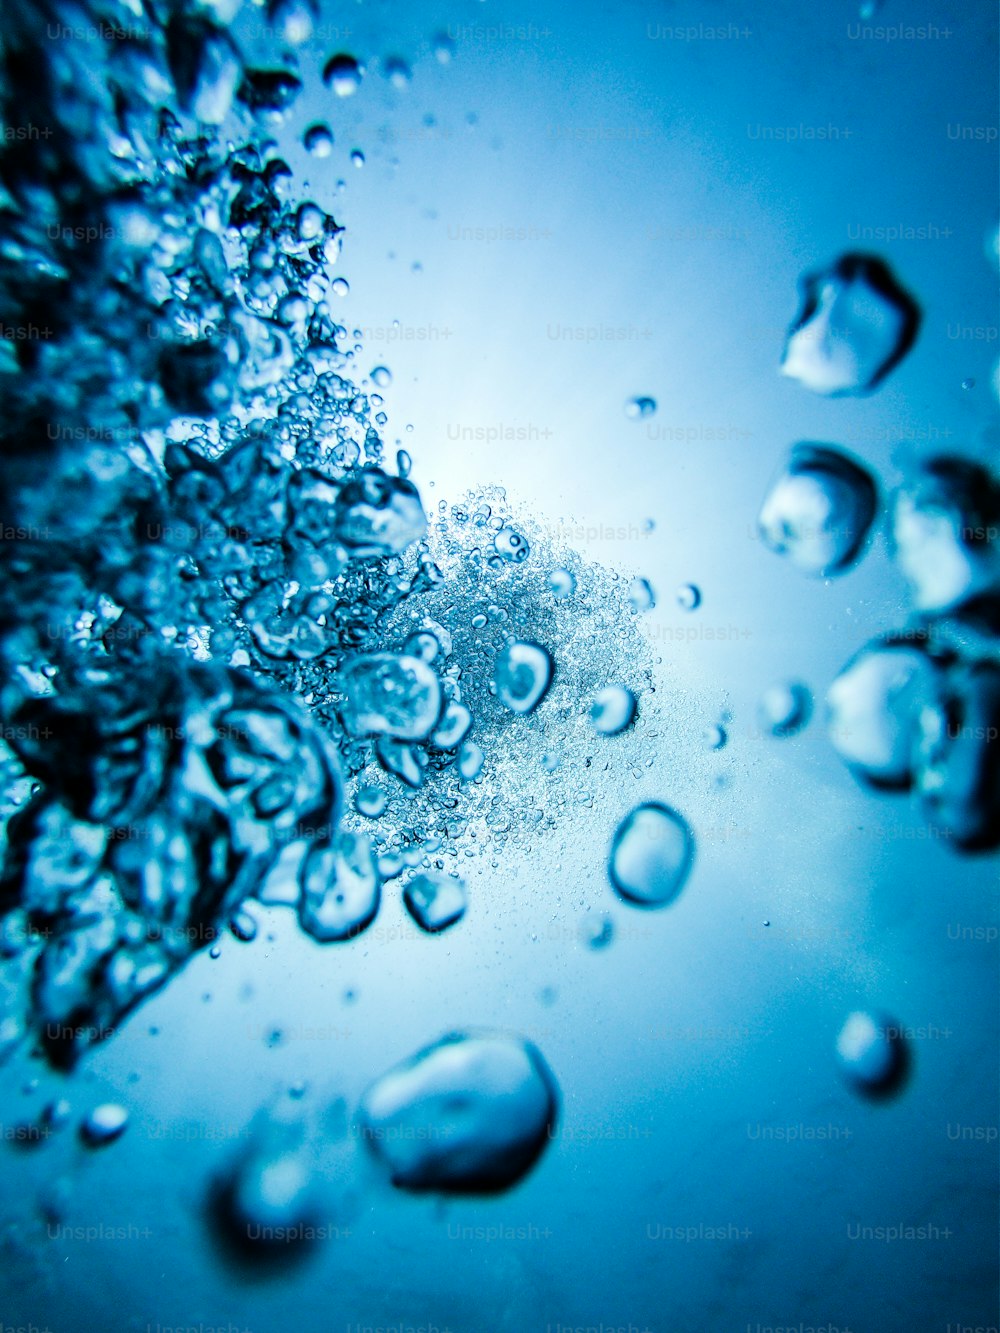 Eine Nahaufnahme von Wasserblasen auf einer blauen Oberfläche